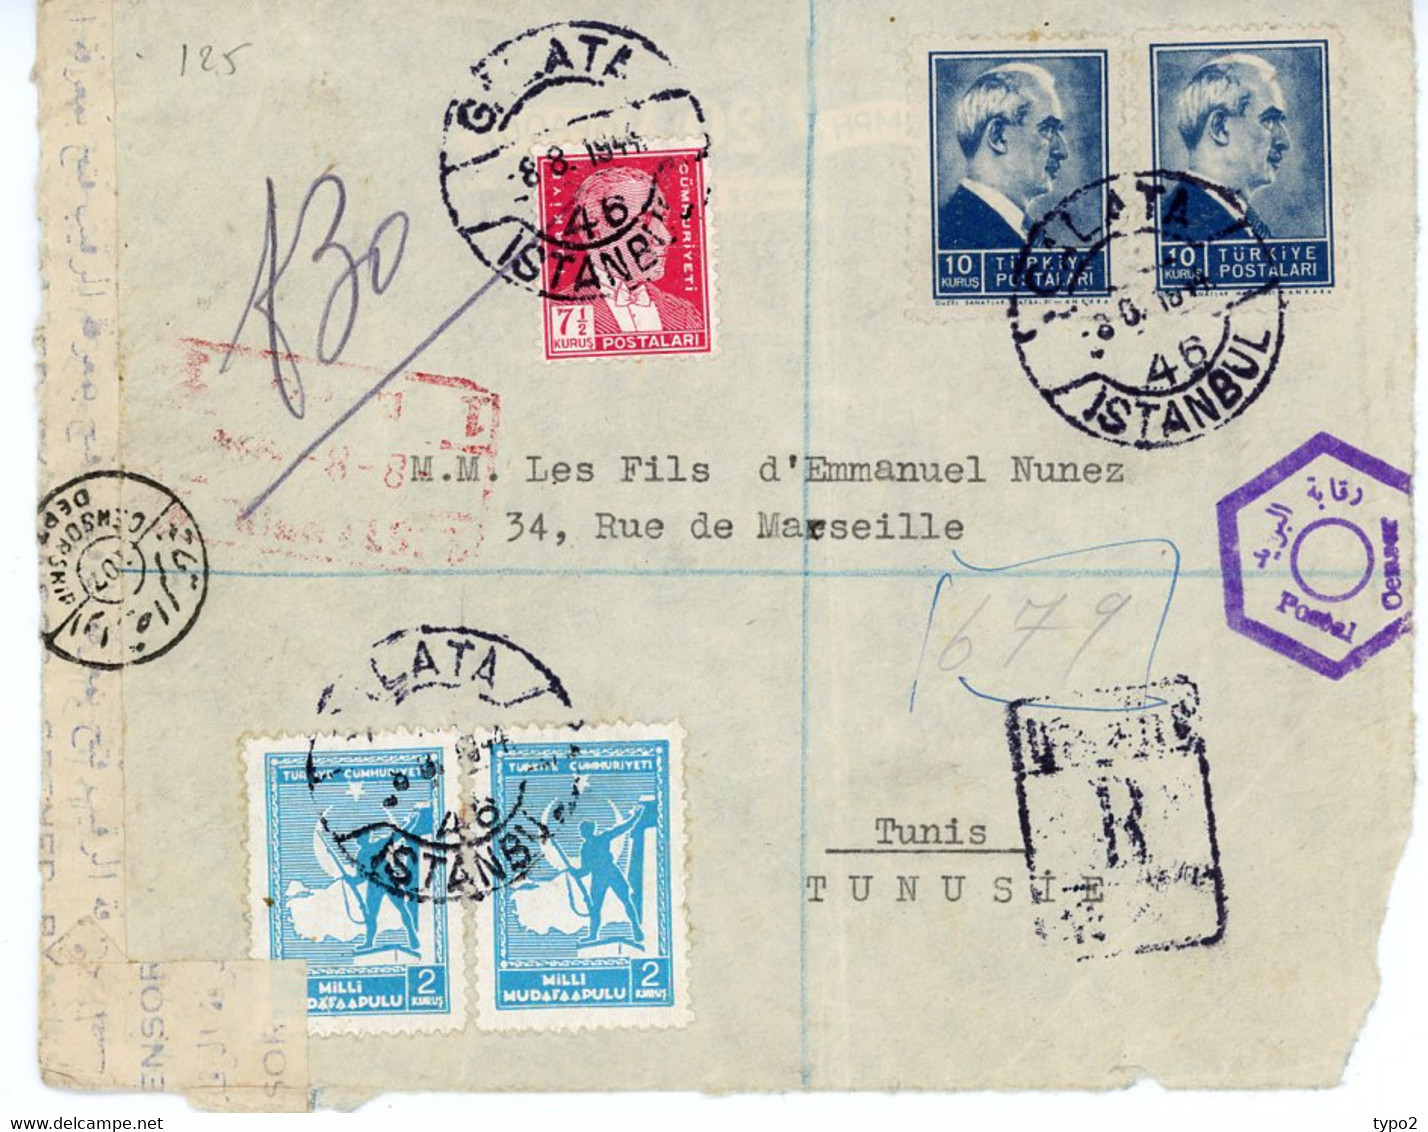 TURQUIE - LETTRE CENSUREE DE 1946 CACHET CENSORSHIP - Dessus De Lettre - Covers & Documents